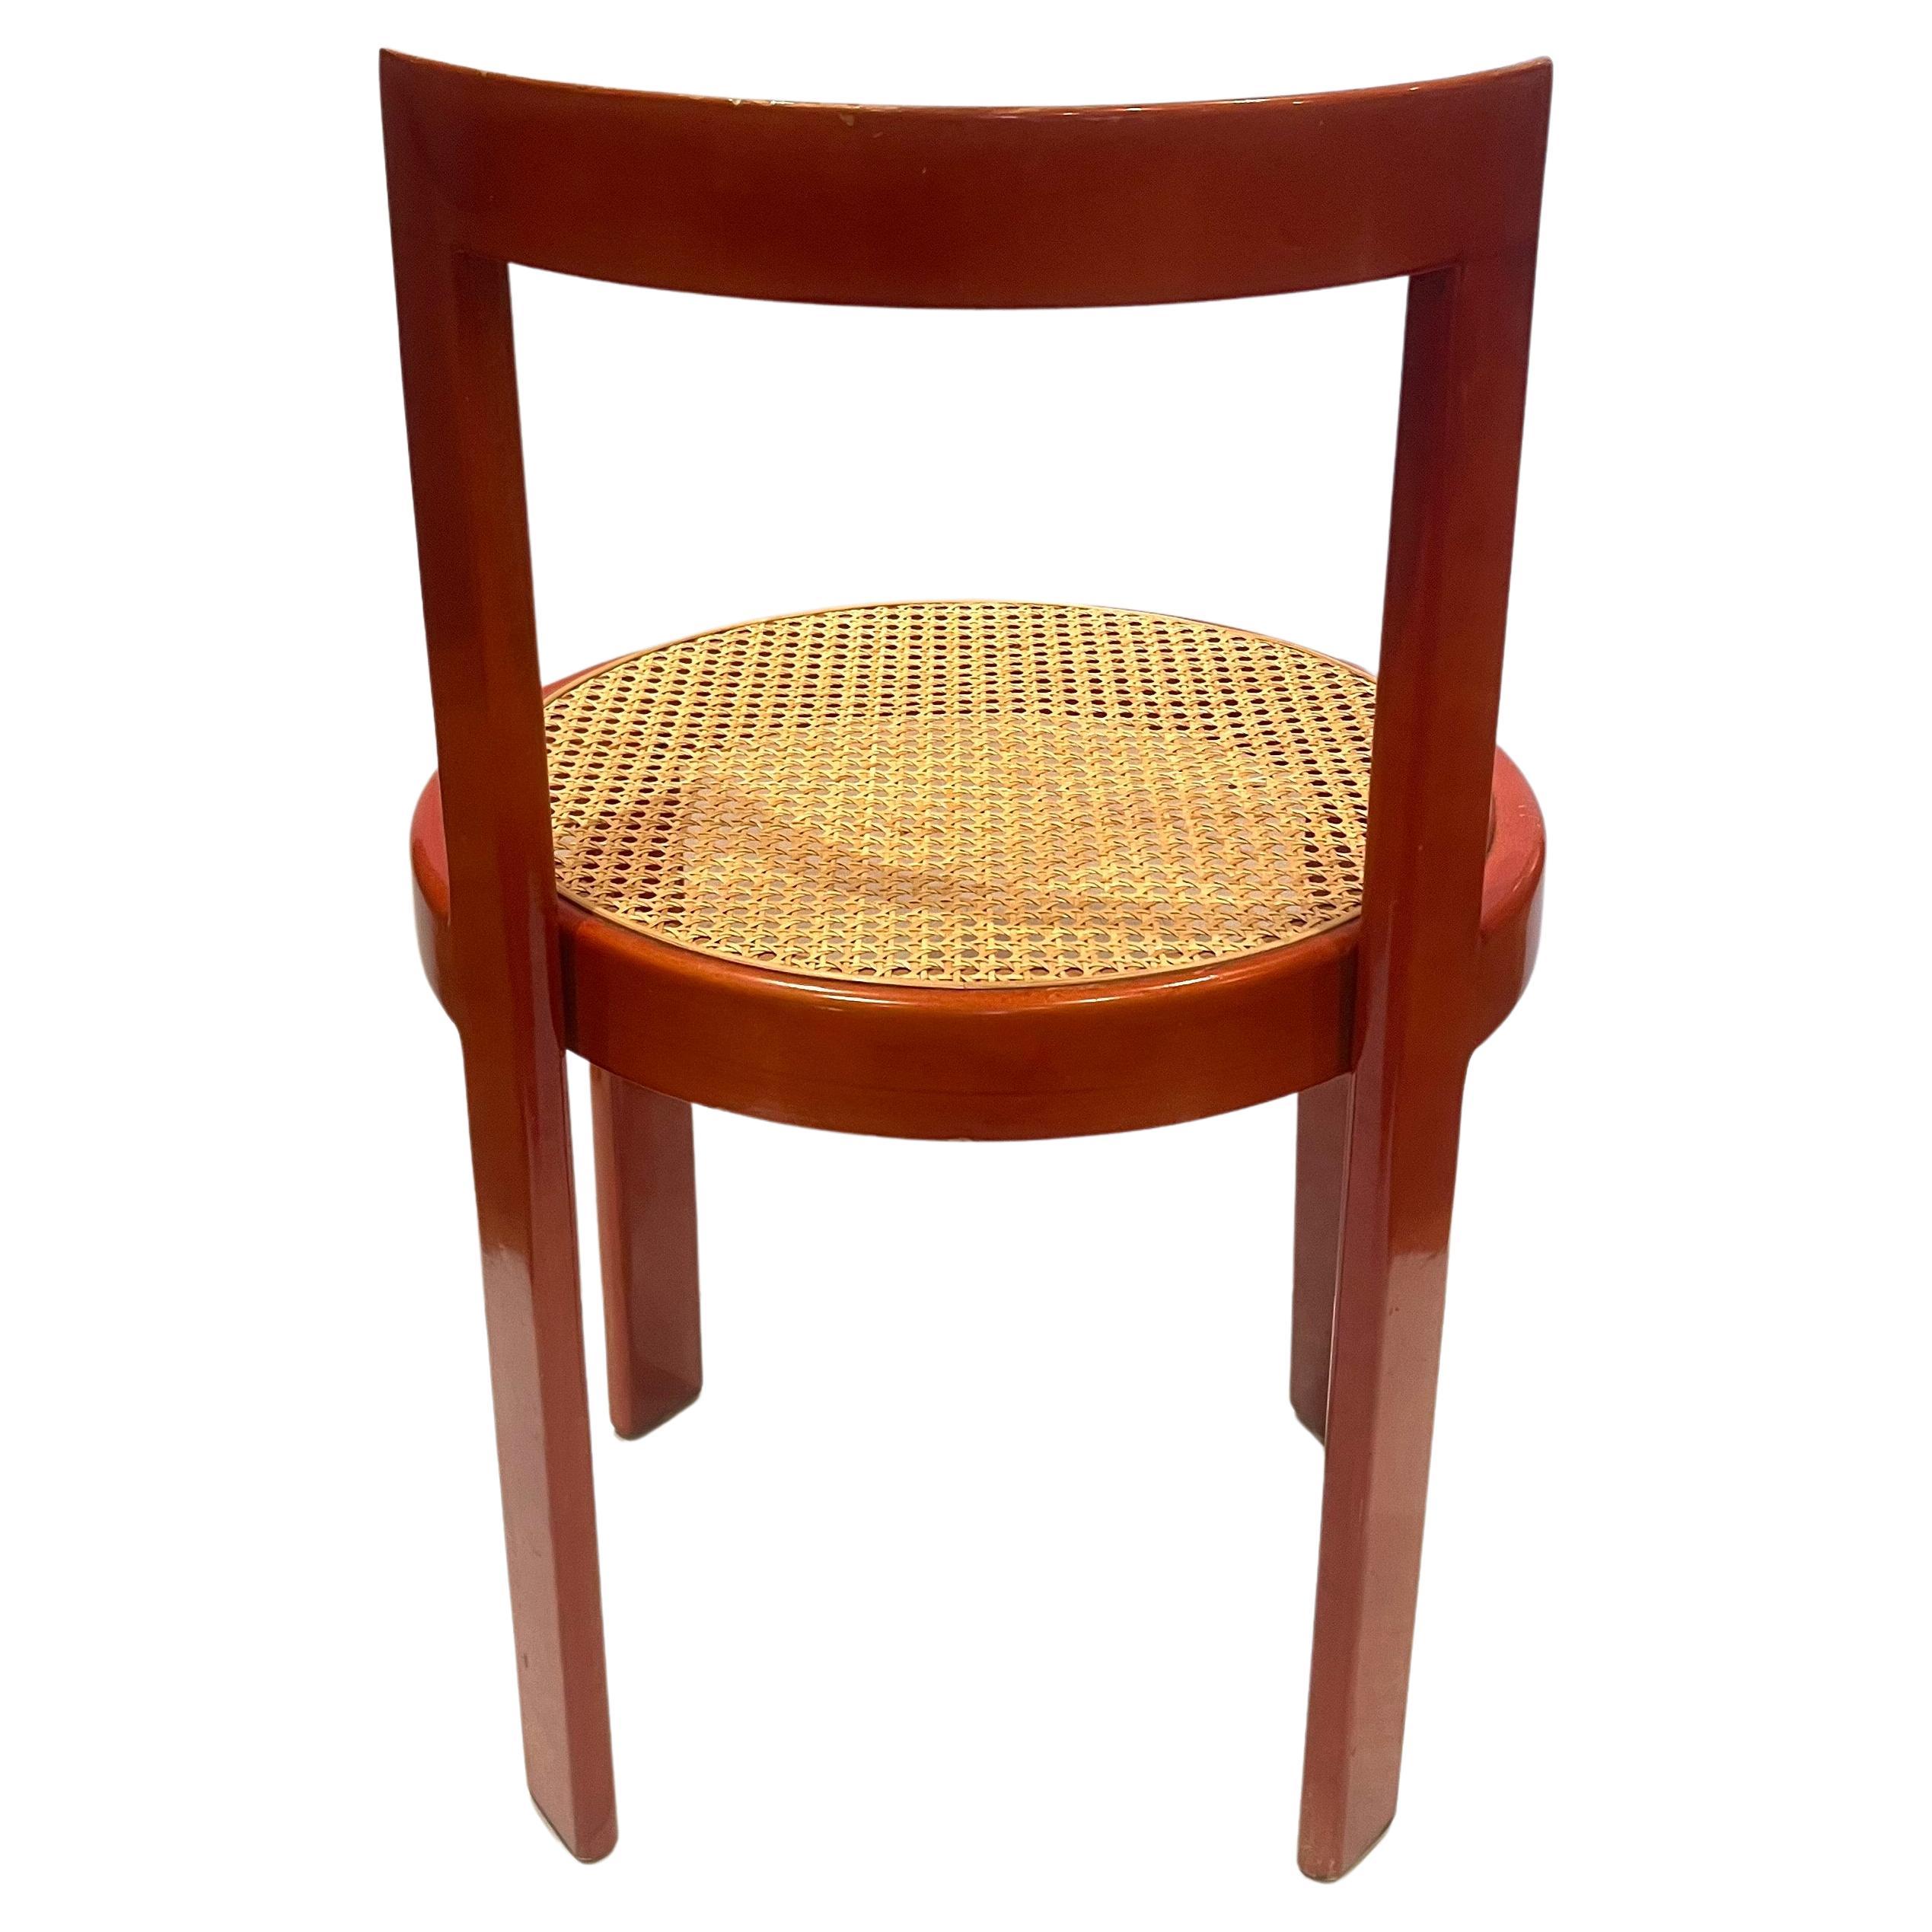 Fabuleux ensemble de 6 chaises de salle à manger italiennes en bois laqué rouge avec des sièges en rotin, belle couleur, difficile à trouver, en bon état avec une usure légère normale.